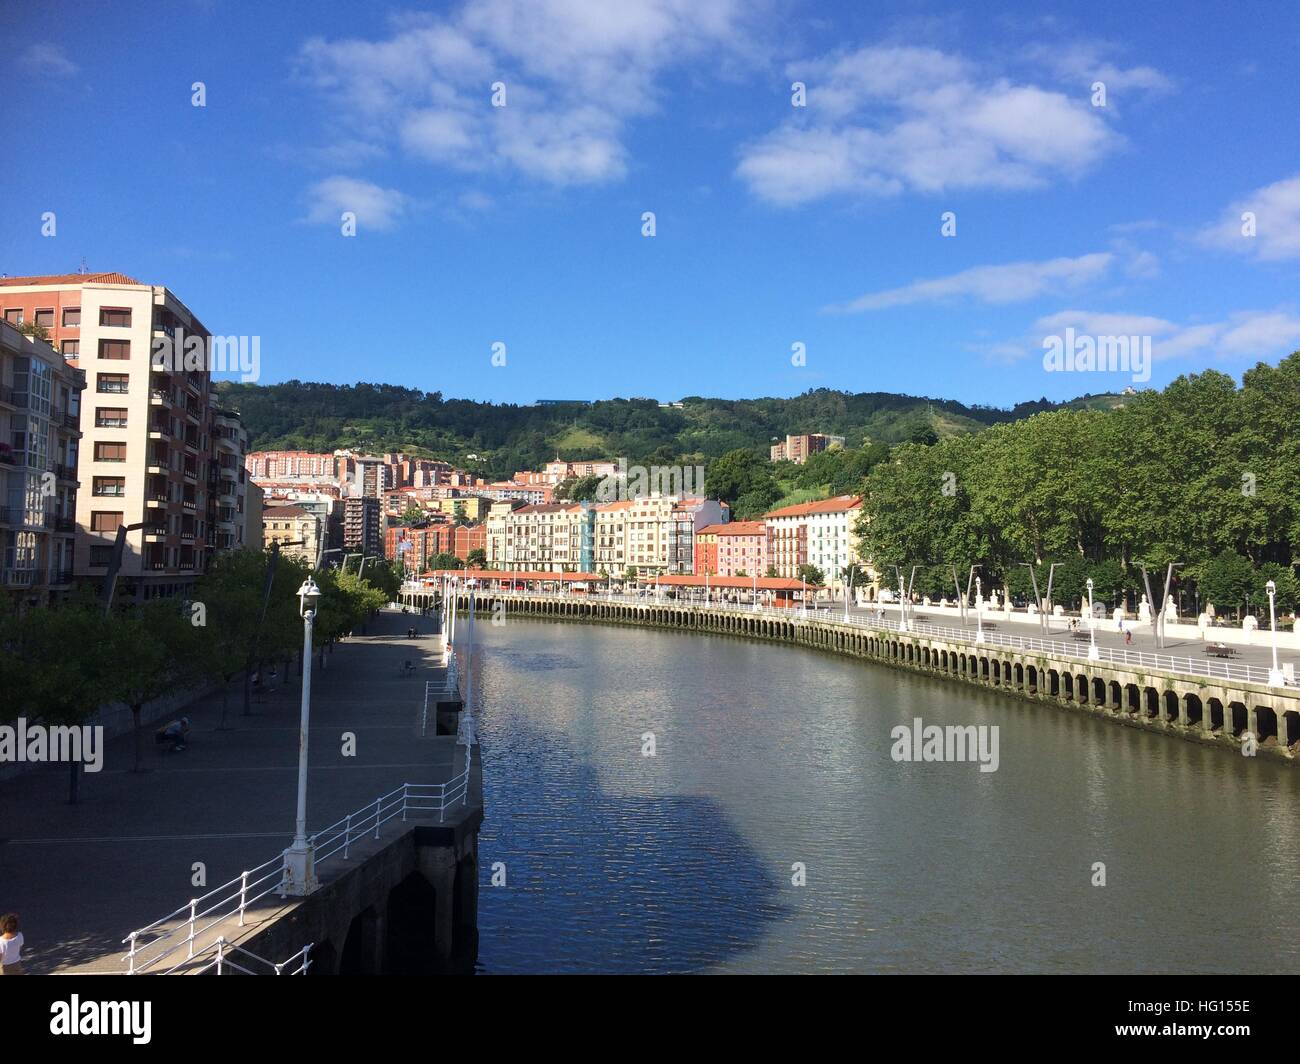 Bilbao, Spanien. 28th July, 2016. Die Altstadt von Bilbao (Spanien), aufgenommen am 28.07.2016. Aus der dahinsiechenden Industriestadt ist dank des Guggenheim-Museums ein Touristenmagnet geworden. Mehr als 19 Millionen Kunstfreunde aus aller Welt haben seit Oktober 1997 das Guggenheim-Museum besucht. (zu dpa «Wiedergeburt dank der Kunst: Guggenheim Bilbao feiert Jubiläum») Foto: Carola Frentzen/dpa /dpa/Alamy Live News Stock Photo